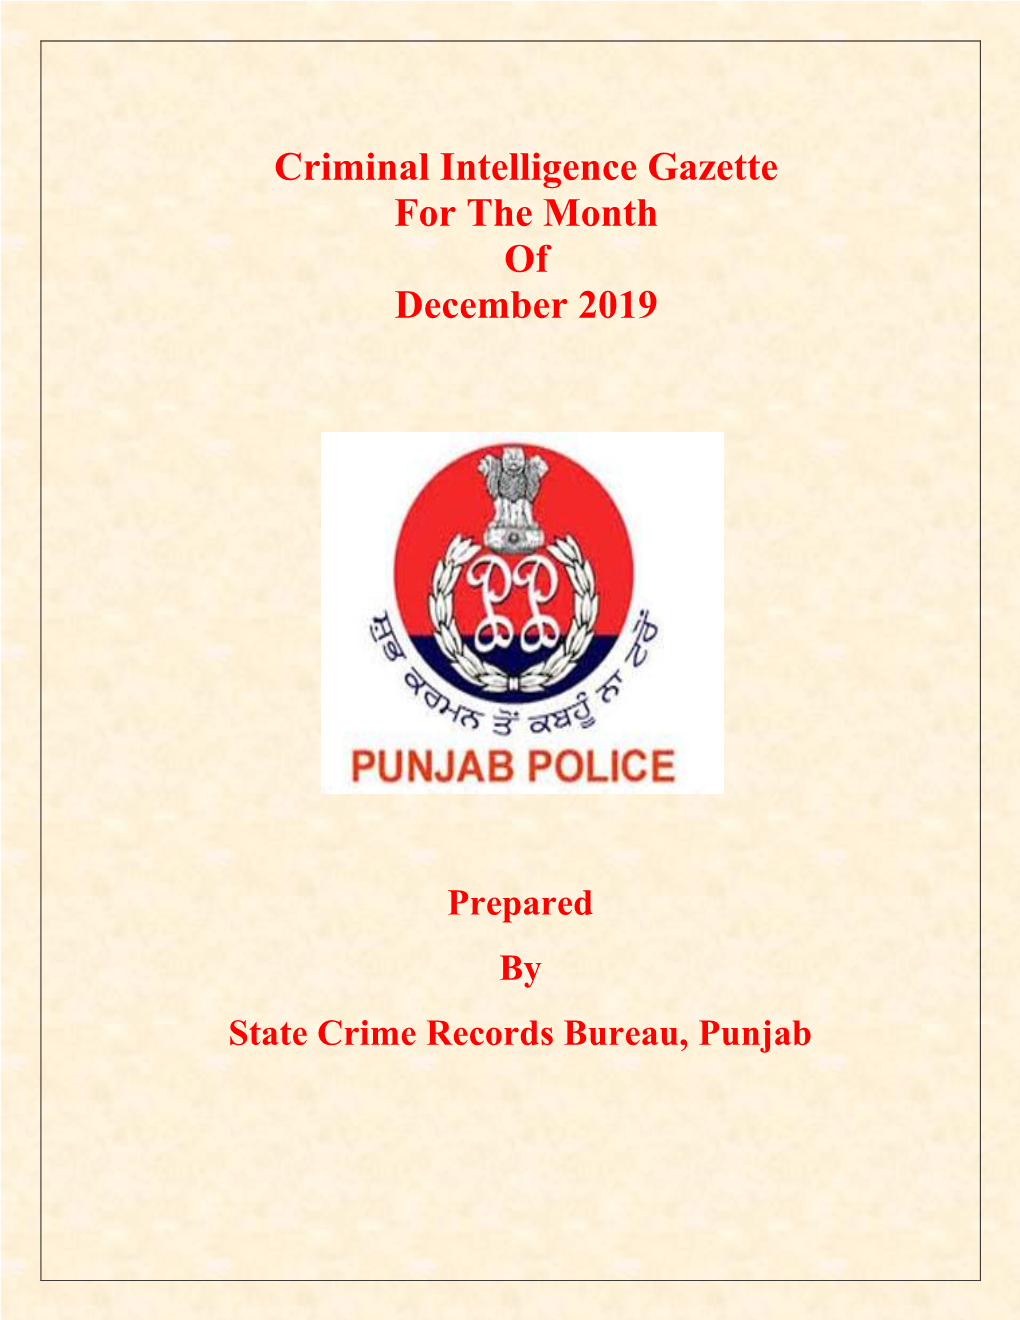 Criminal Intelligence Gazette for the Month of December 2019